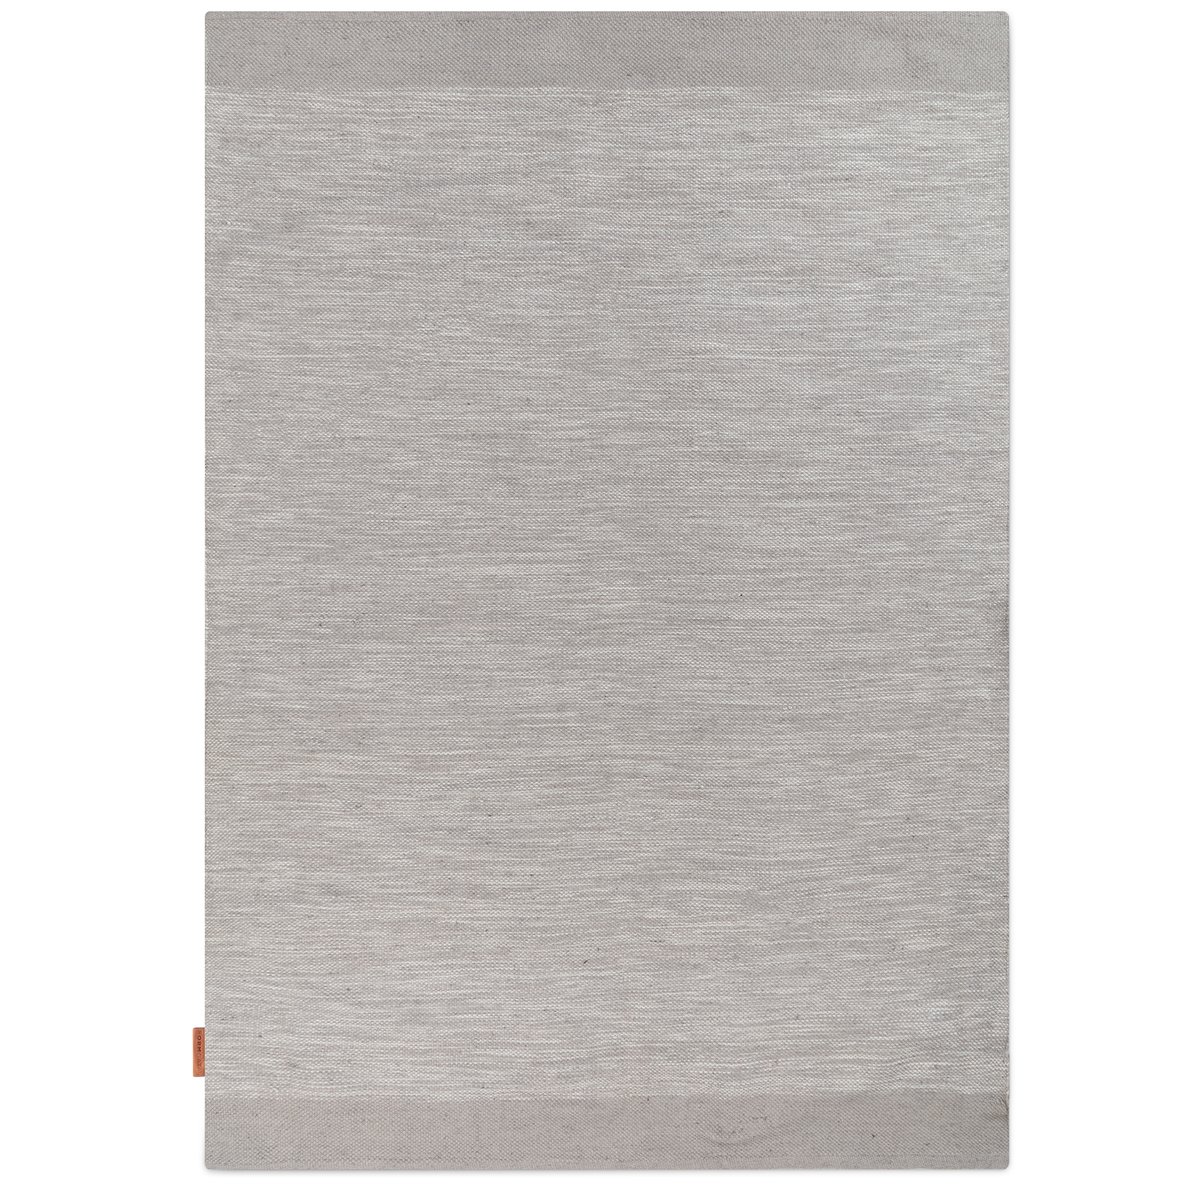 Bilde av Formgatan Melange teppe 170x230 cm Grey